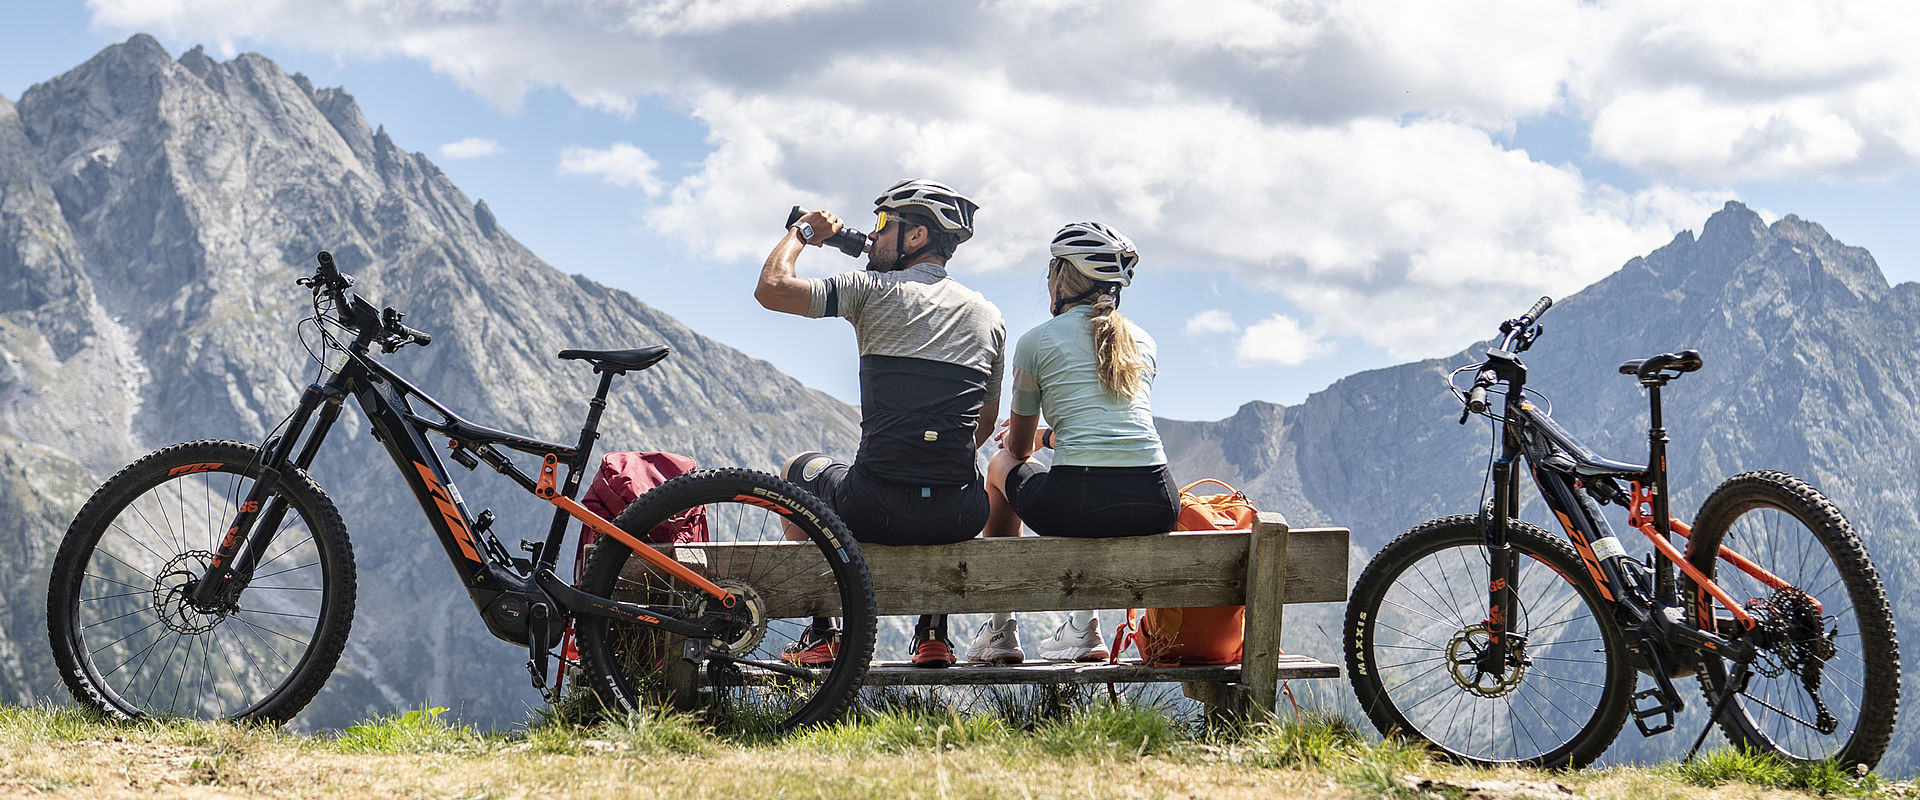 Paar sitzt auf Bank in Berglandschaft mit Räder geparkt